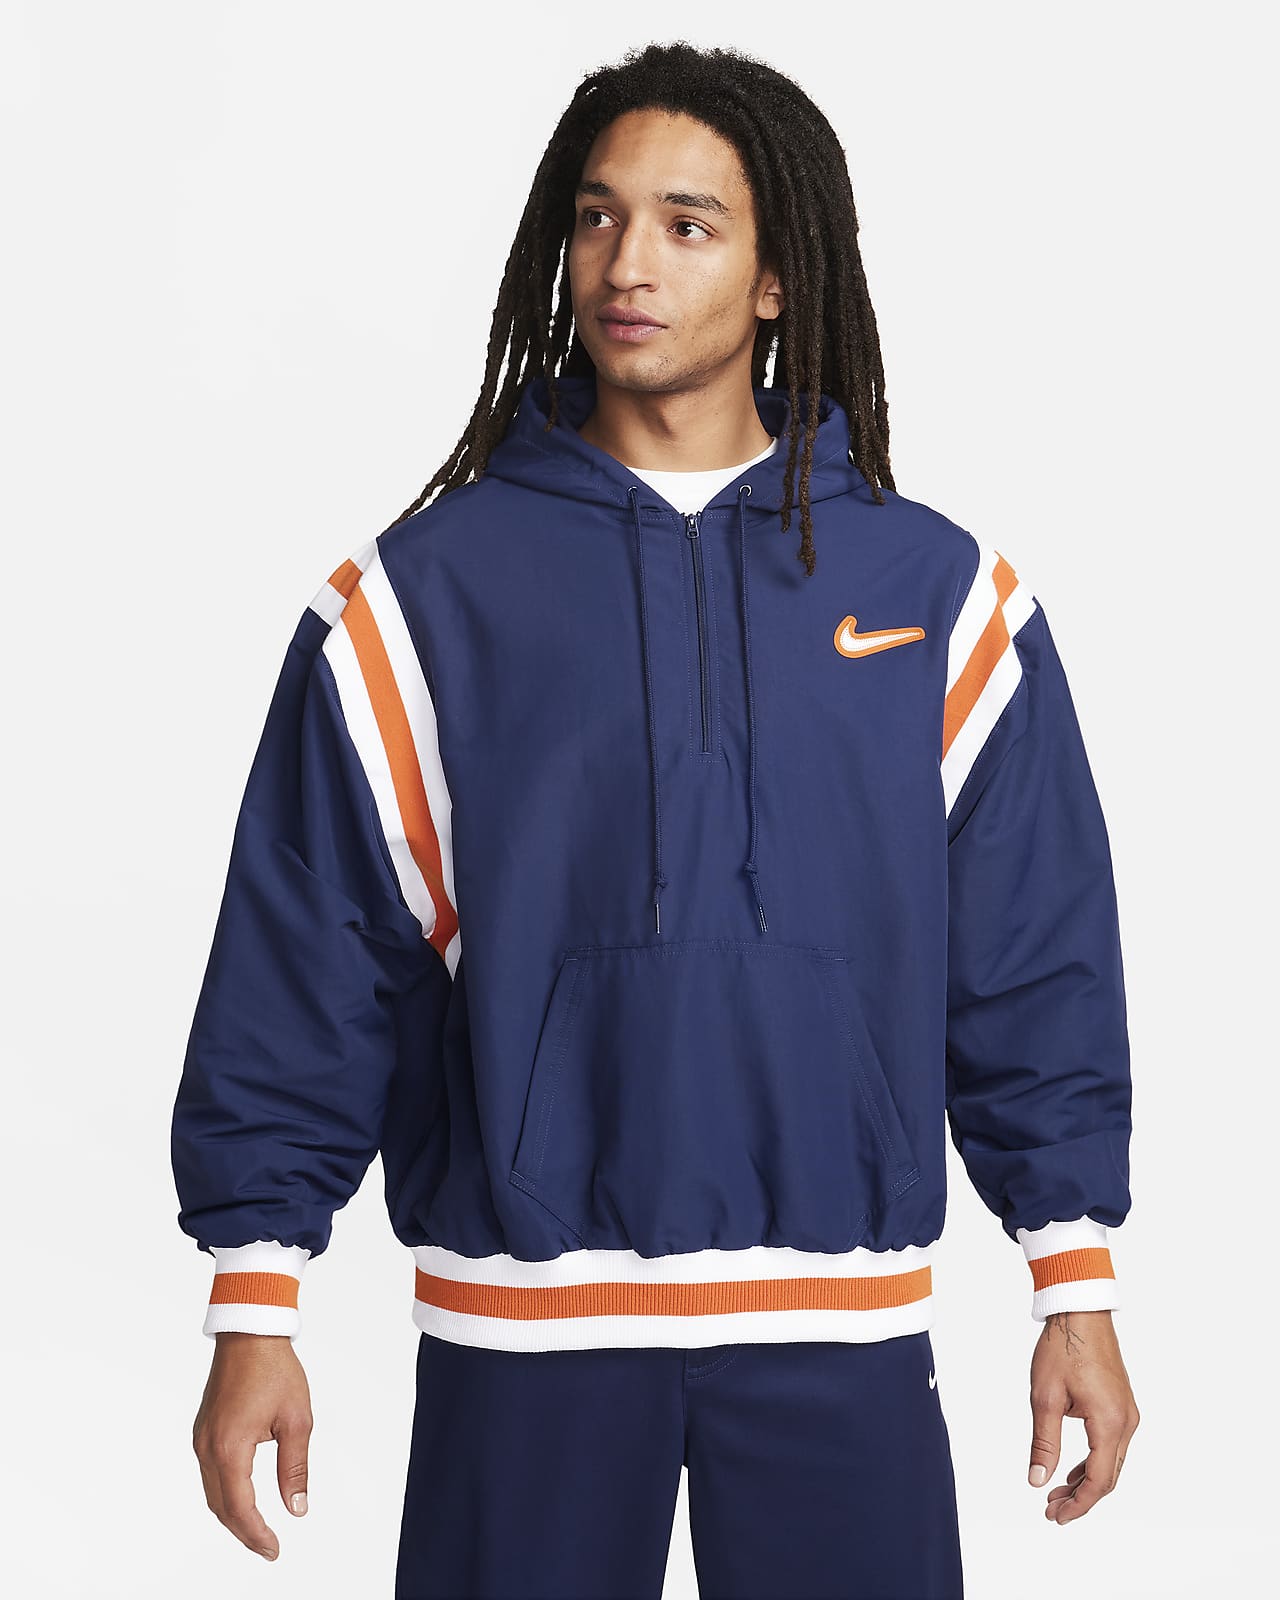 Nike Authentics Men's Varsity Jacket. Nike LU